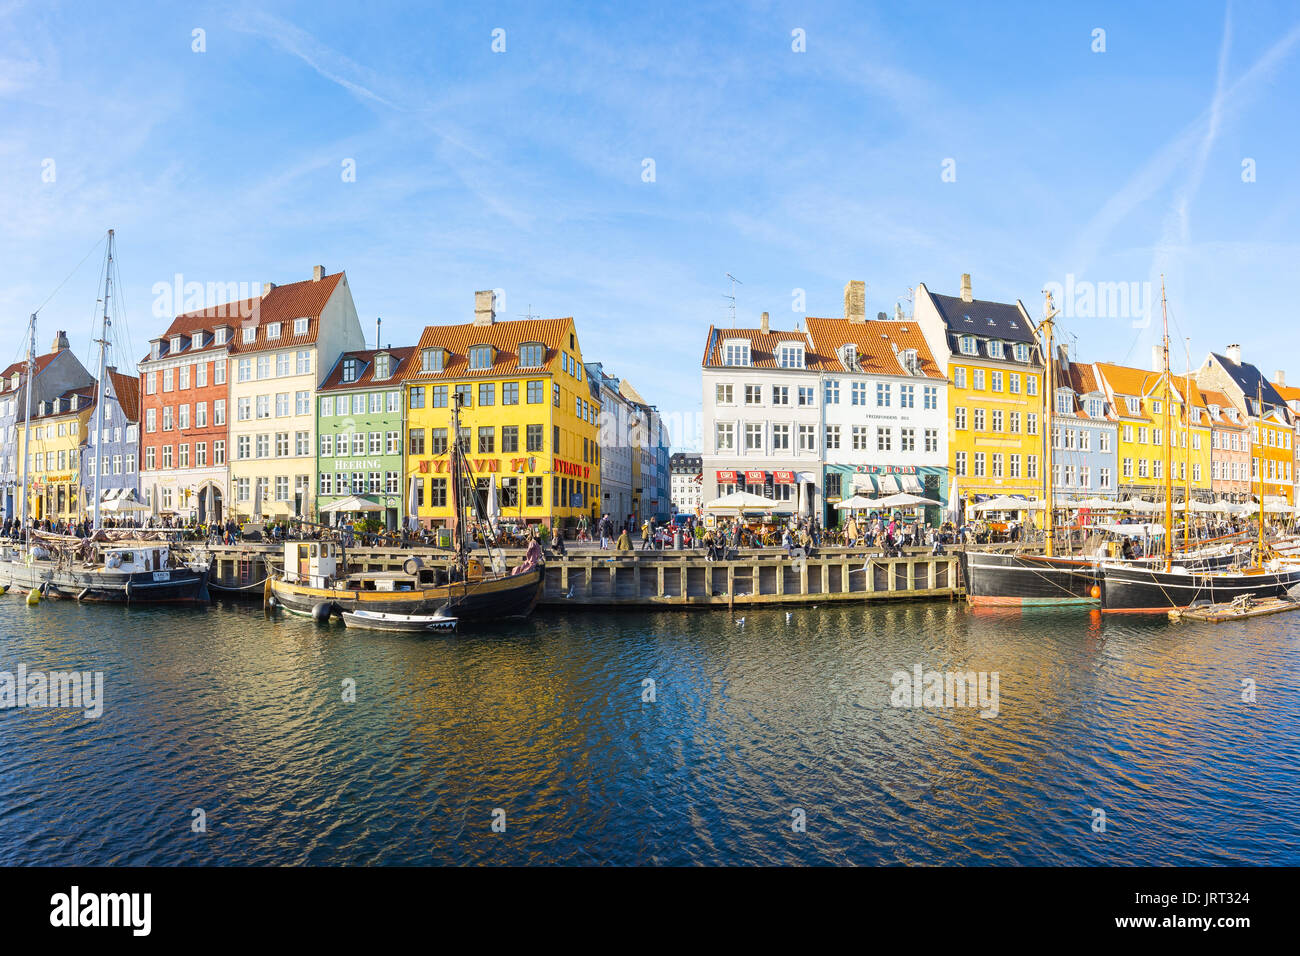 Kopenhagen, Dänemark - 1. Mai 2017: Nyhavn mit seinen malerischen Hafen mit alten Segelschiffen canals' ruckartig auf dem Wasser, und bunte Fassaden von ol Stockfoto